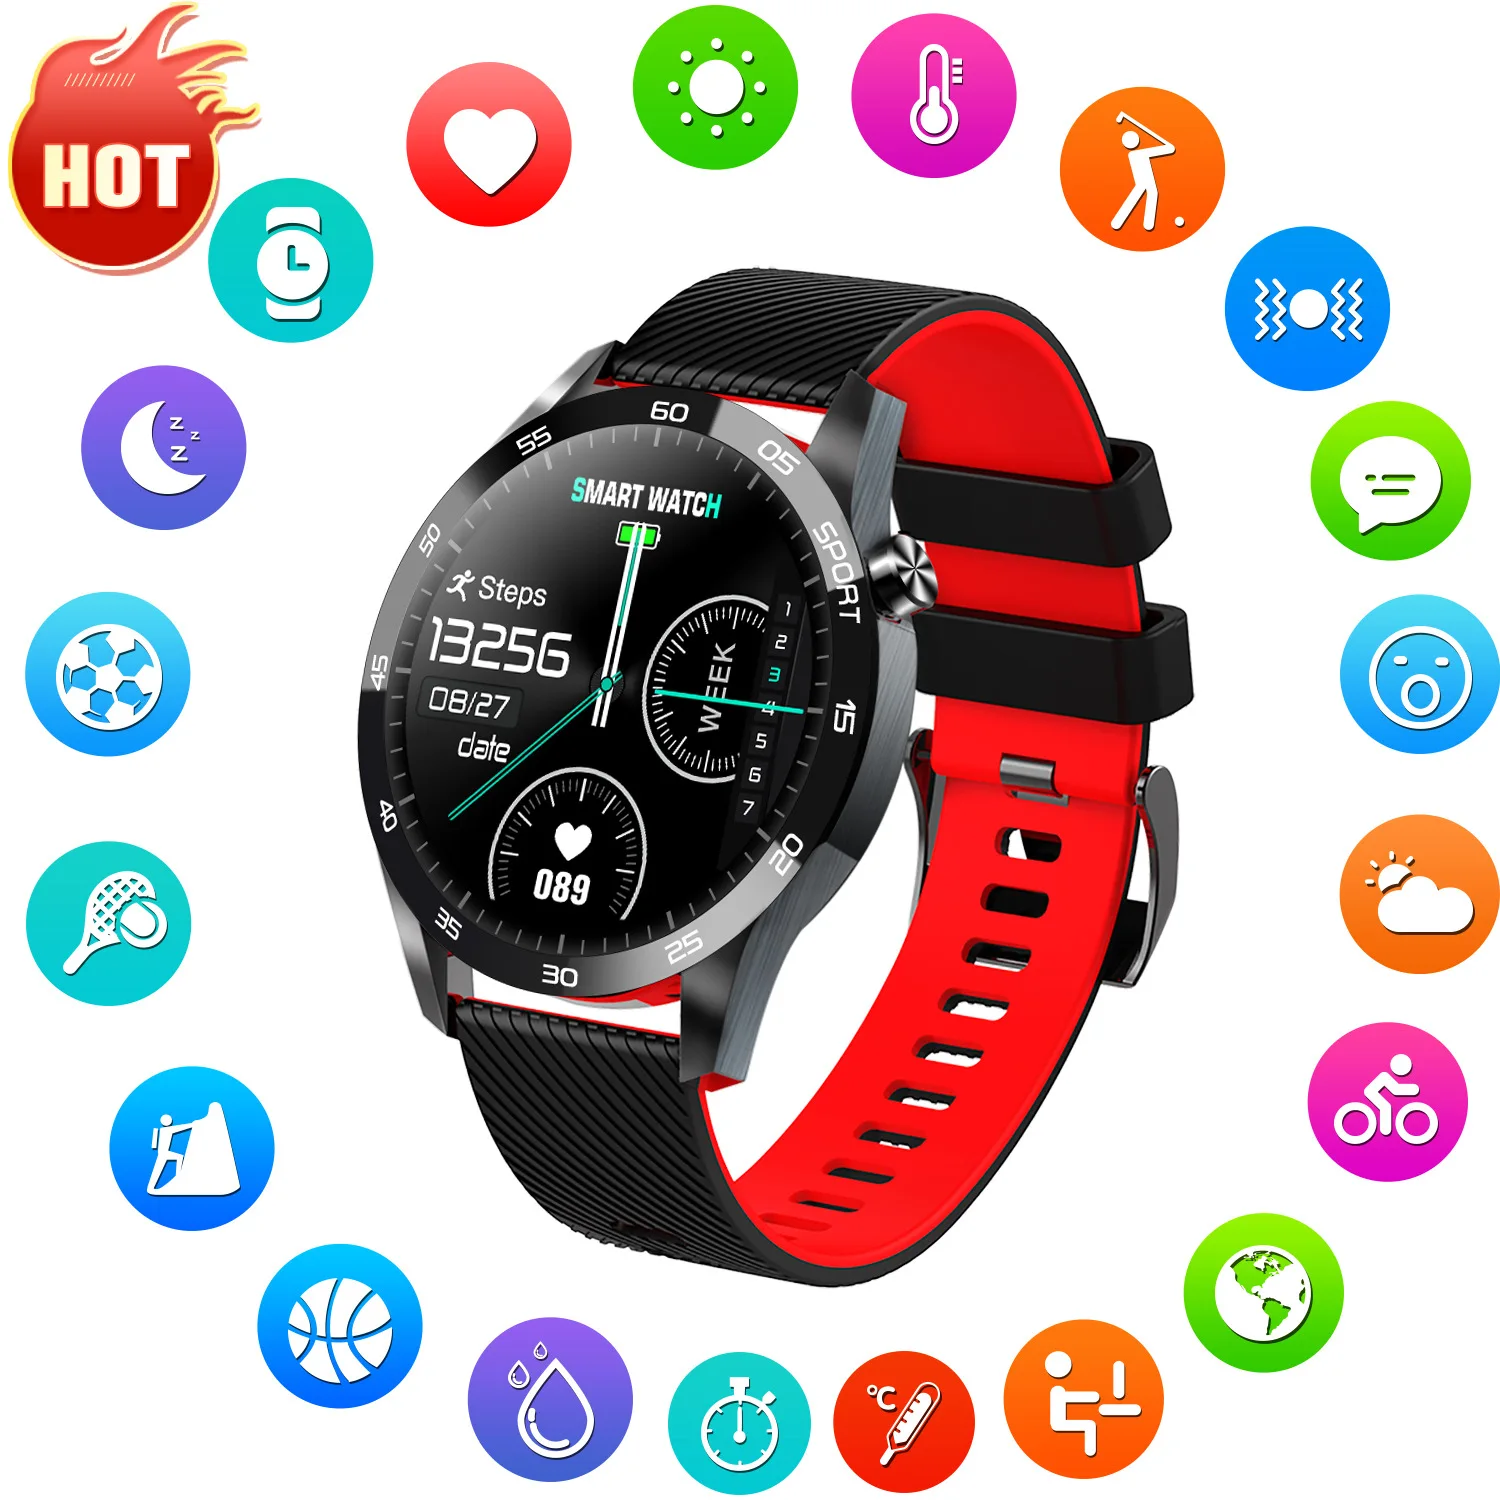 

2021 Neue Smart Uhr Männer Mode IP68 Wasserdicht Smartwatch Herz Rate Fitness Tracker Frauen Volle Touch Uhr Für Android IOS